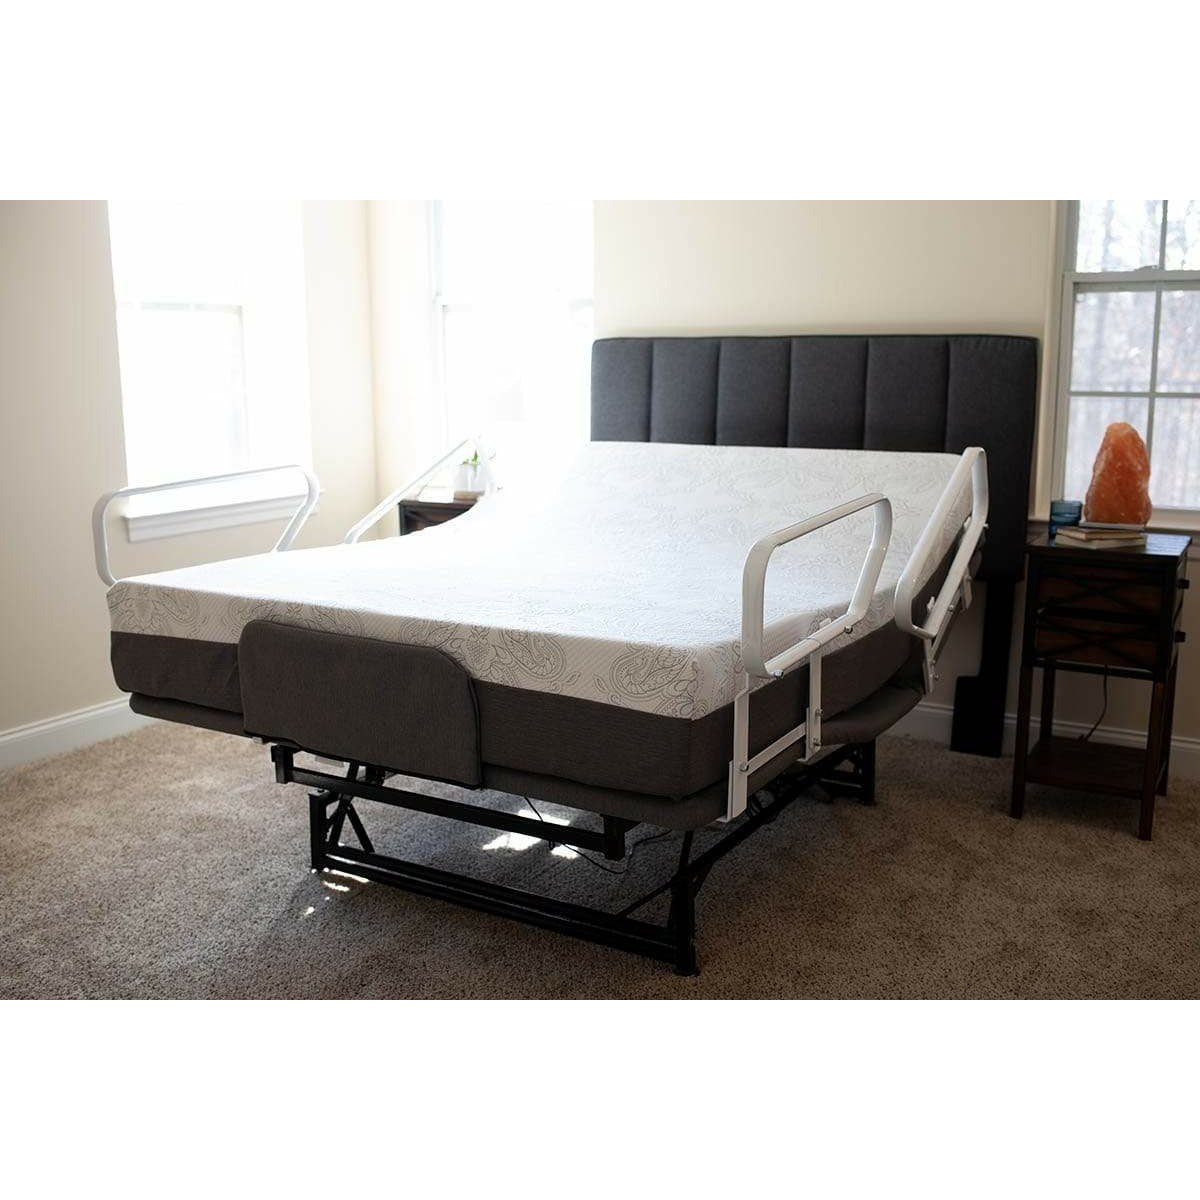 185 FLEXABED Hi-Low SL Adjustable Bed (Model No. 185) – Celesticare